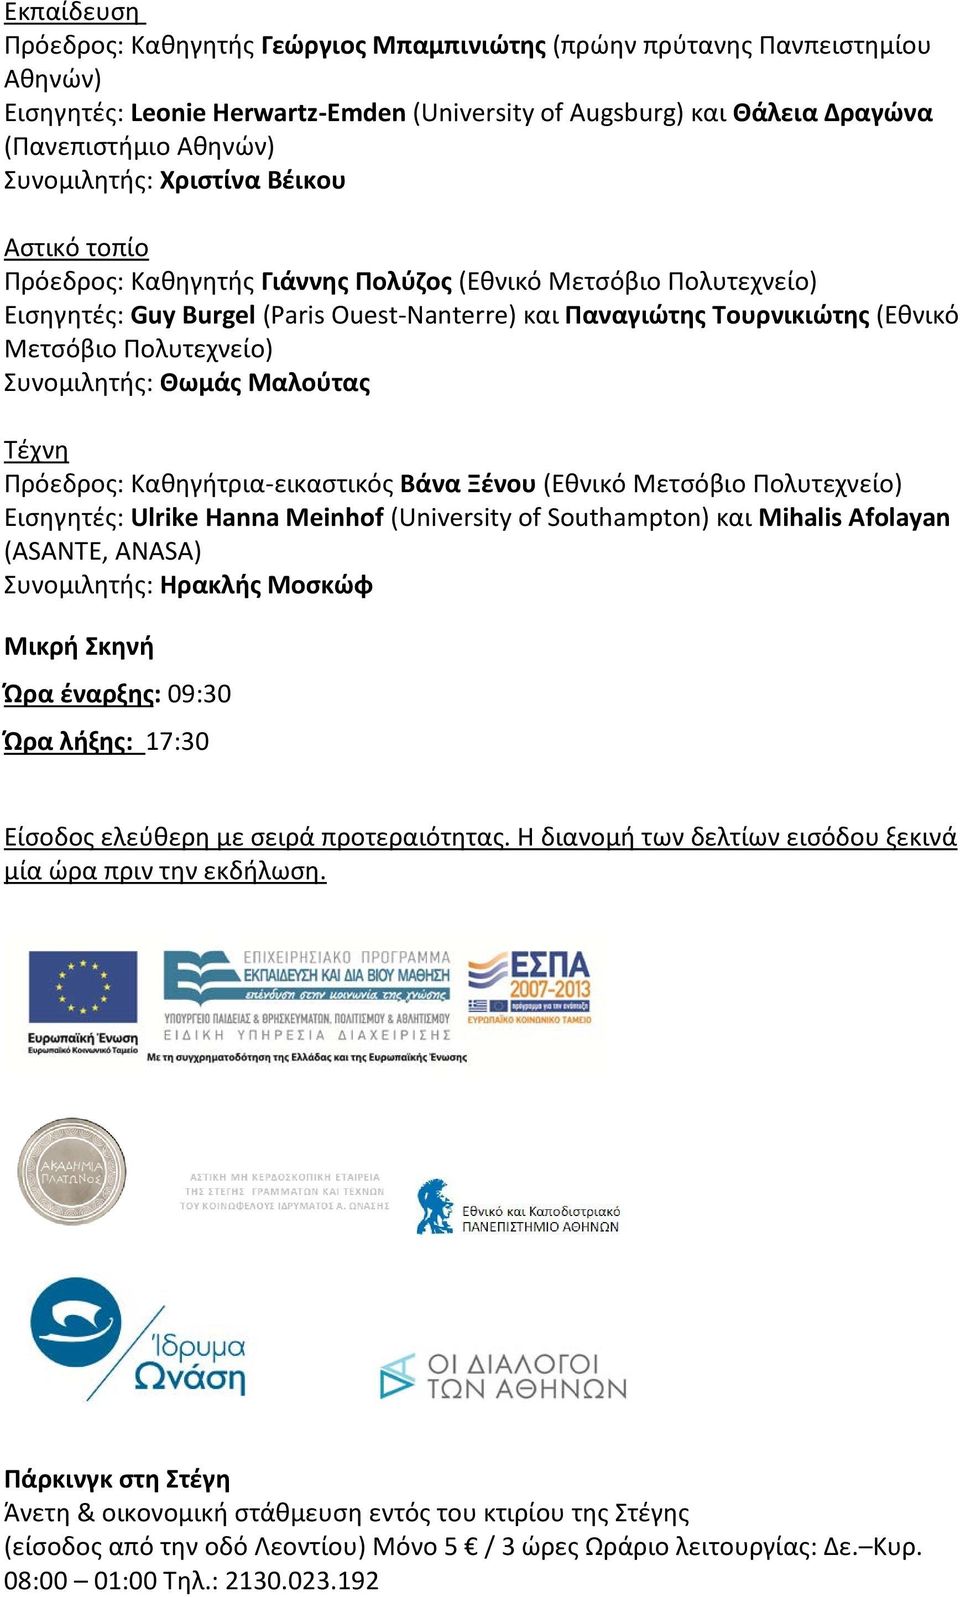 Πολυτεχνείο) Συνομιλητής: Θωμάς Μαλούτας Τέχνη Πρόεδρος: Καθηγήτρια-εικαστικός Βάνα Ξένου (Εθνικό Μετσόβιο Πολυτεχνείο) Εισηγητές: Ulrike Hanna Meinhof (University of Southampton) και Mihalis